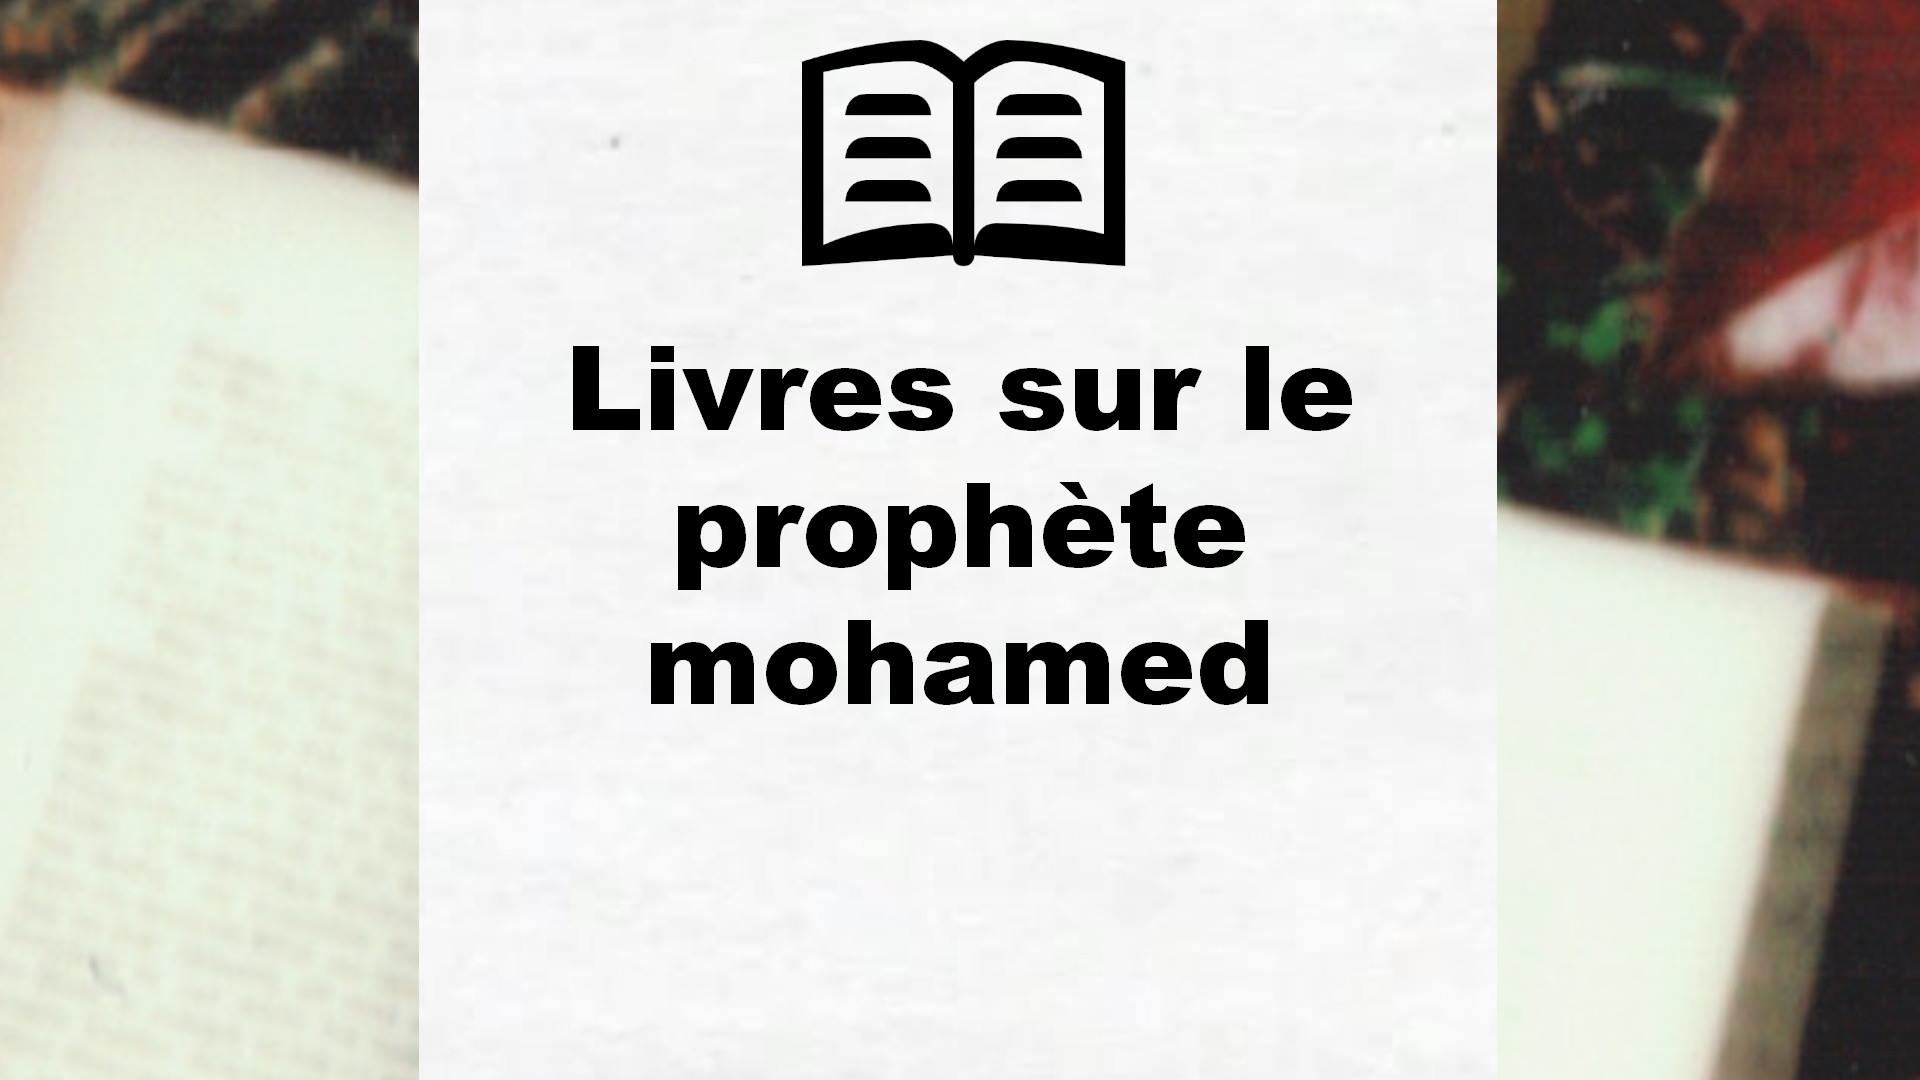 Livres sur le prophète mohamed